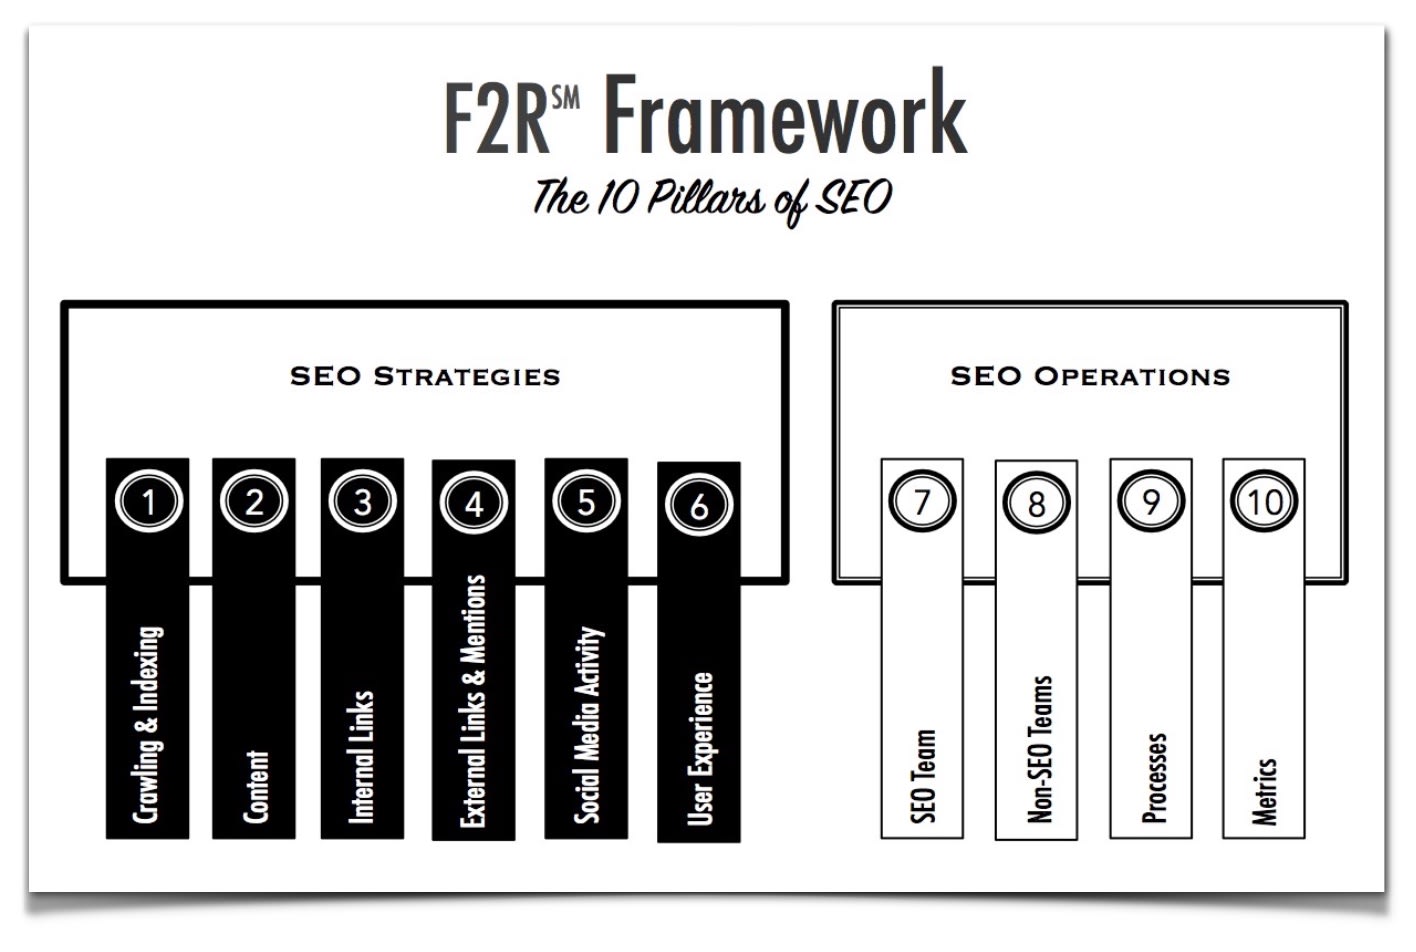 F2R Framework Larger Image